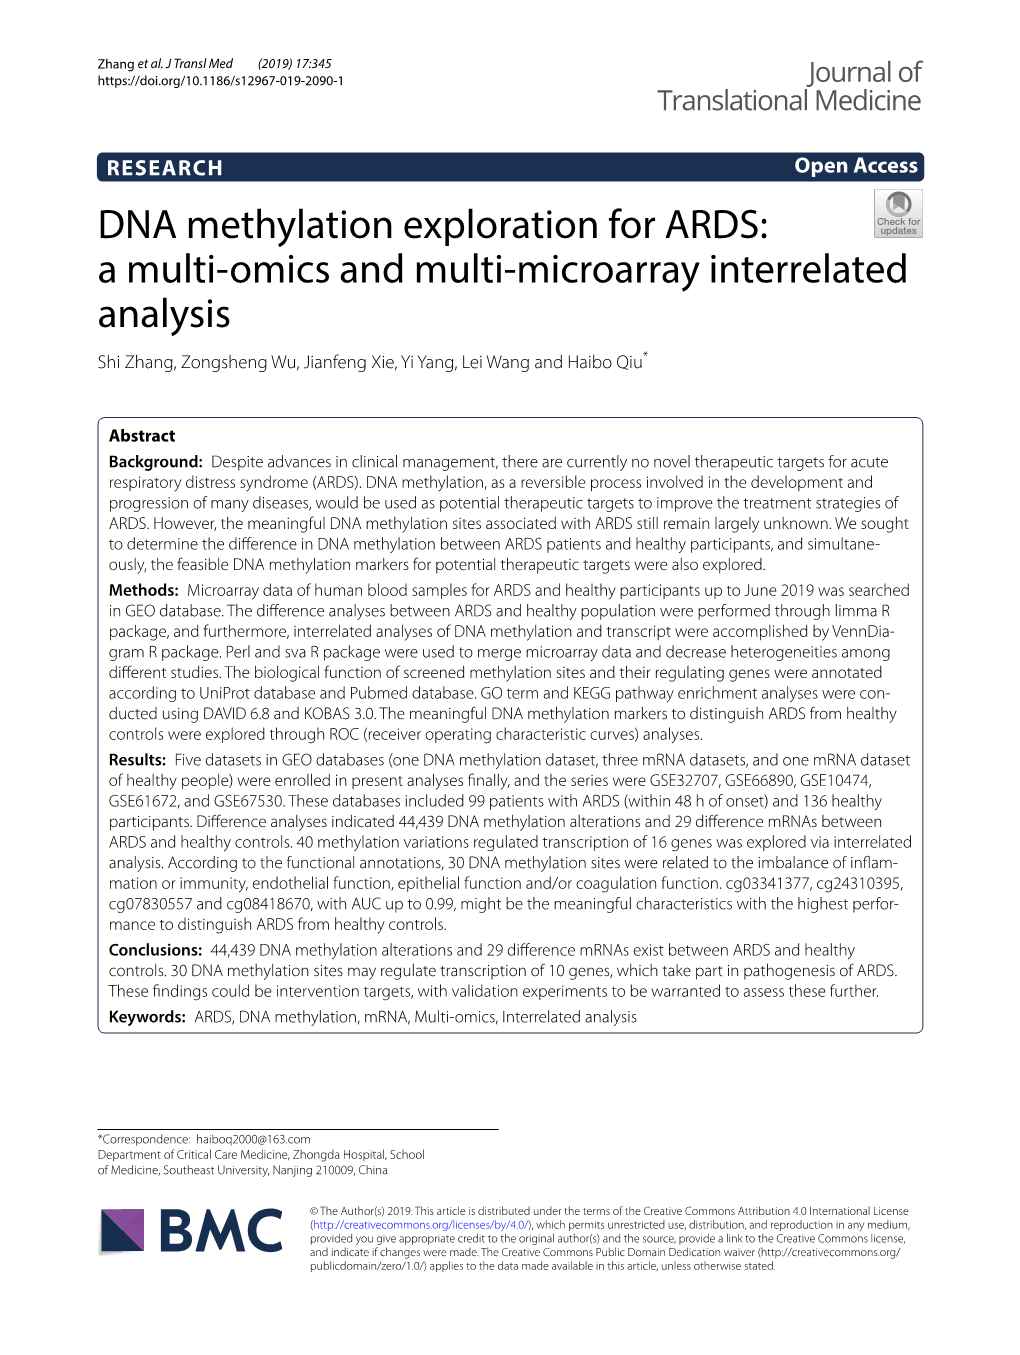 DNA Methylation Exploration for ARDS: a Multi‑Omics and Multi‑Microarray Interrelated Analysis Shi Zhang, Zongsheng Wu, Jianfeng Xie, Yi Yang, Lei Wang and Haibo Qiu*